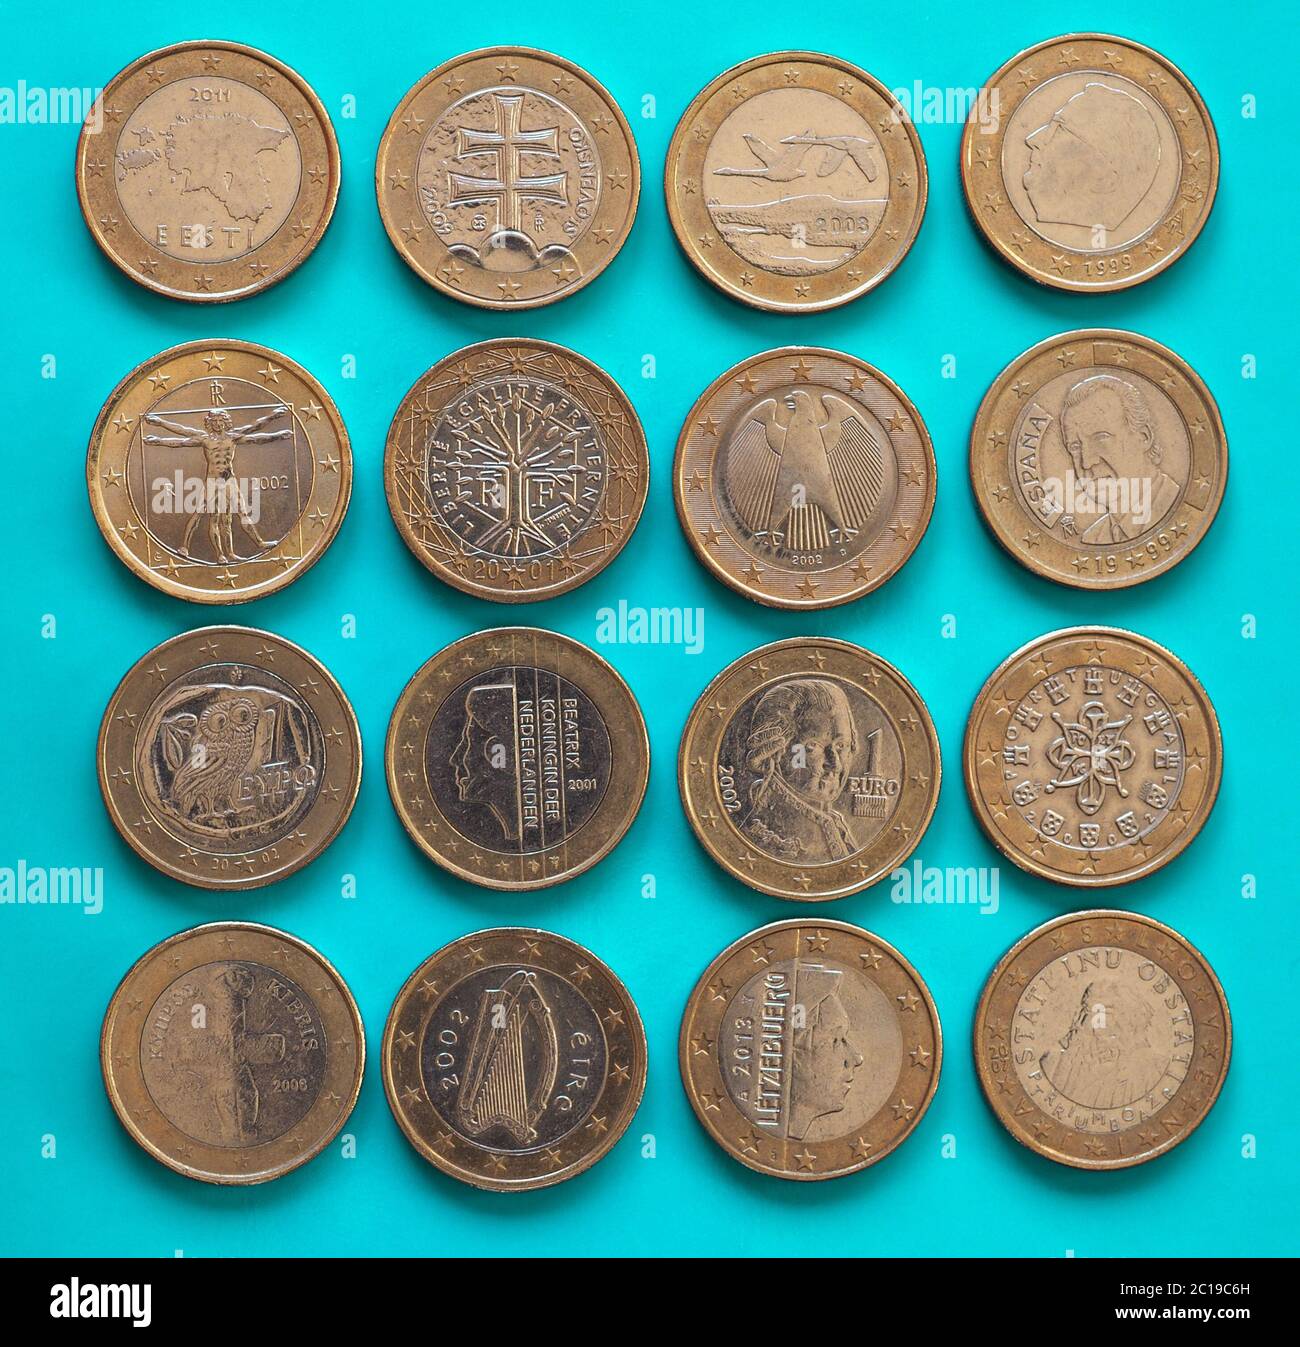 1-euro-münze, europäische union isoliert über weiß